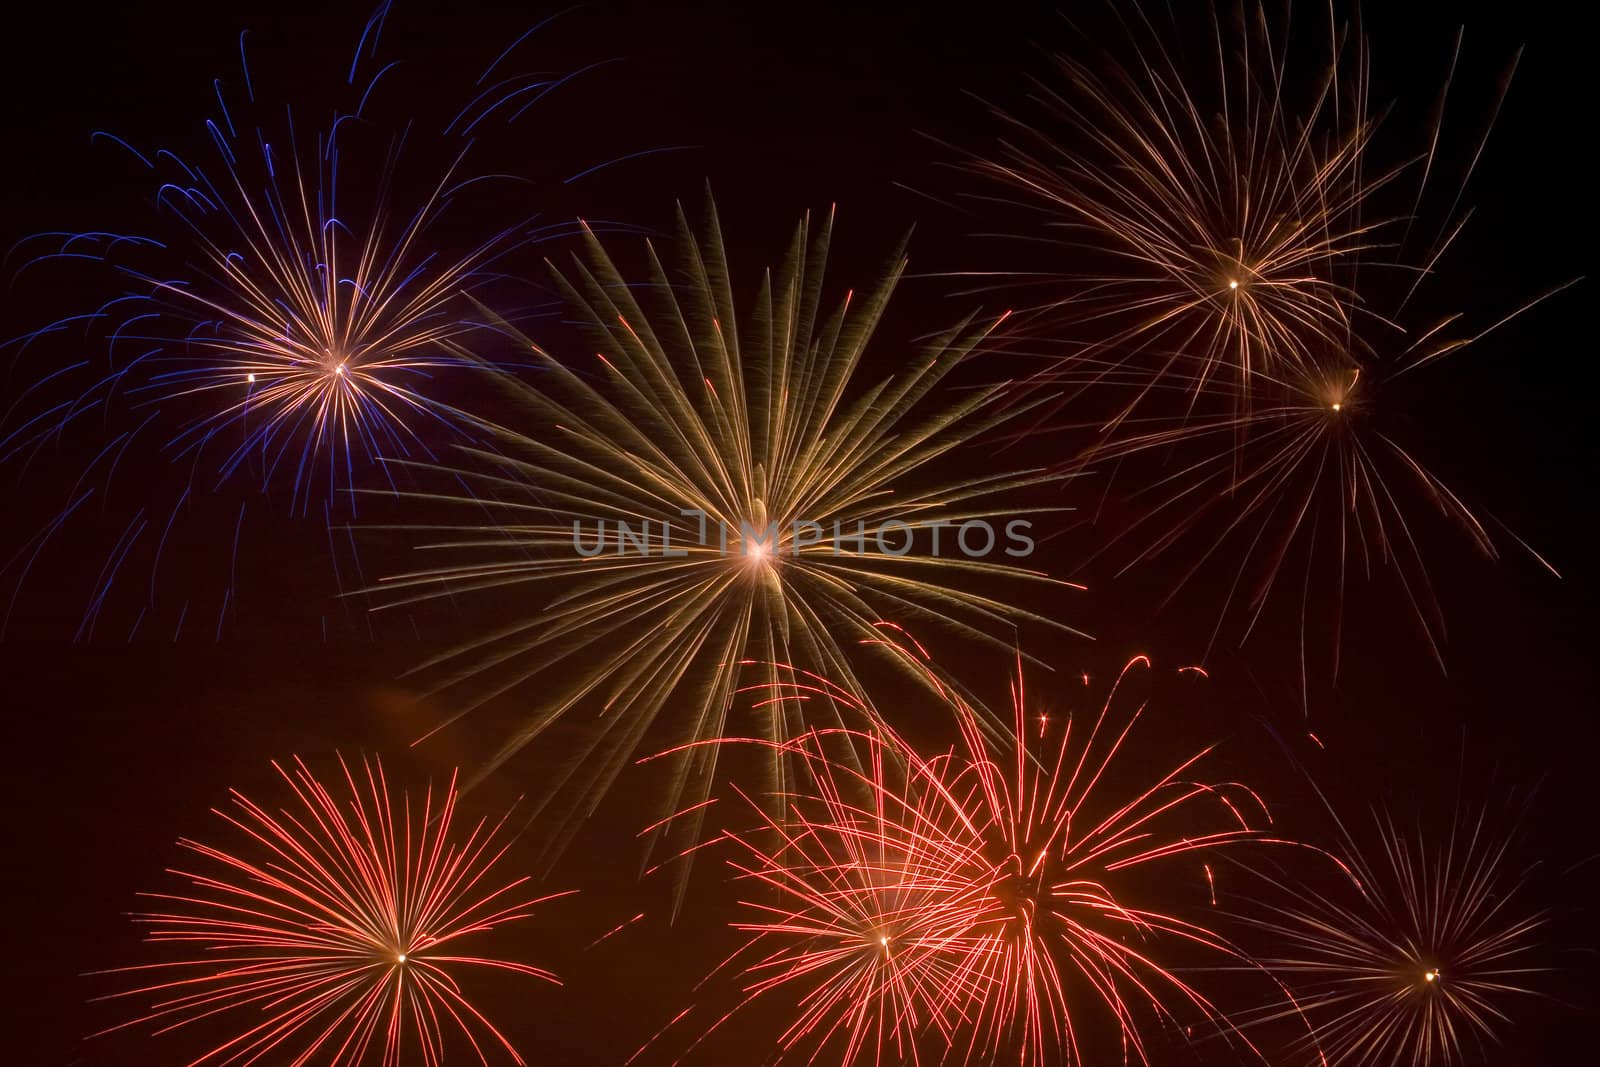 Fireworks 157 by Dan70